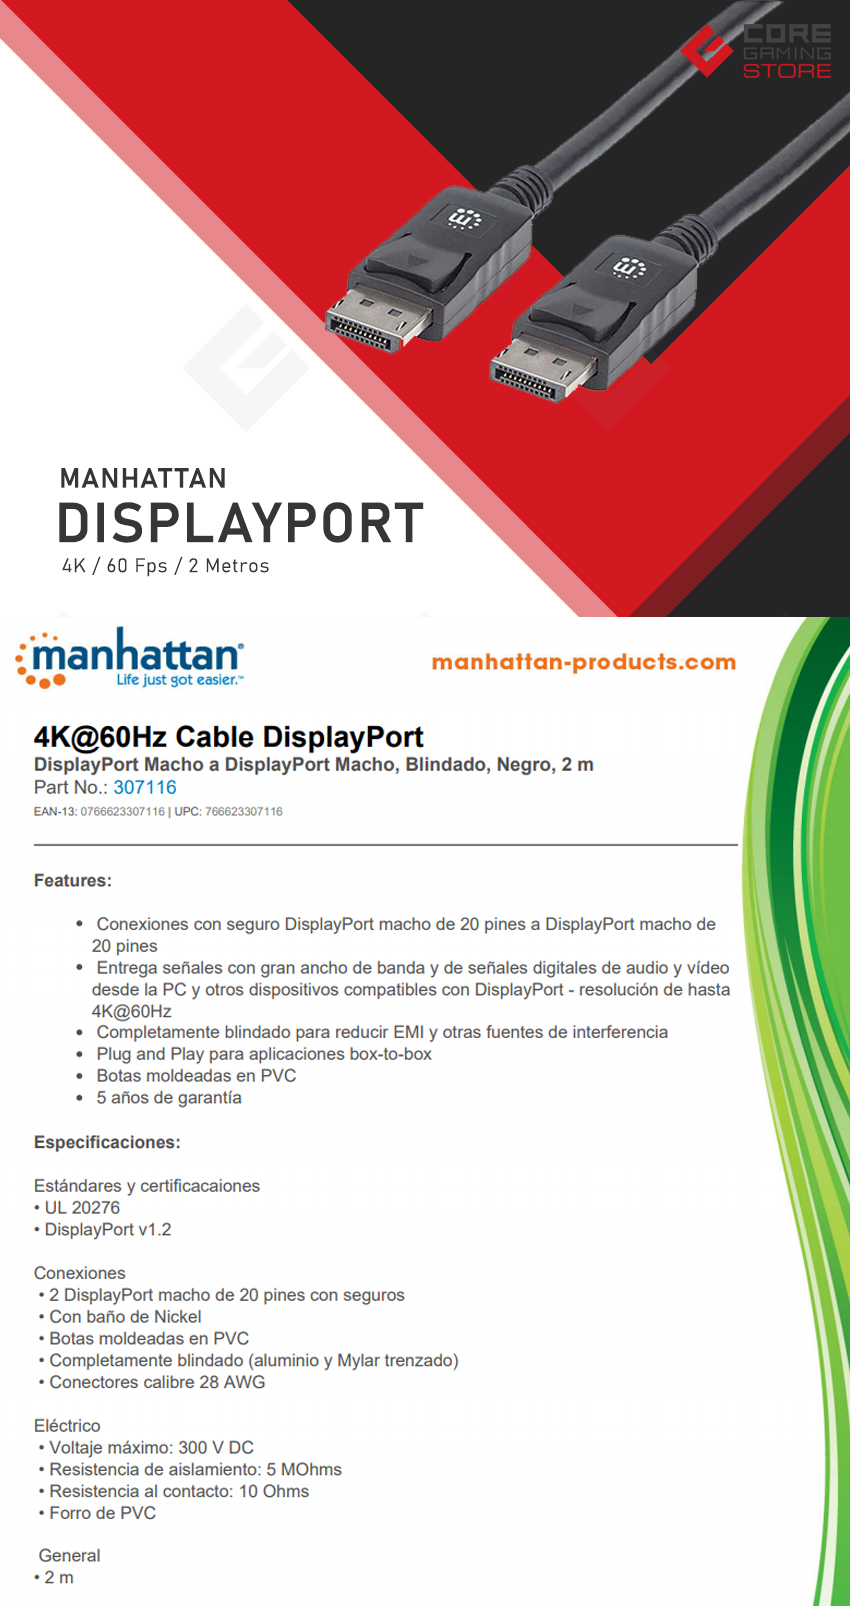 Cable Displayport Manhattan, 2.0m, 4K@60Hz, 307116